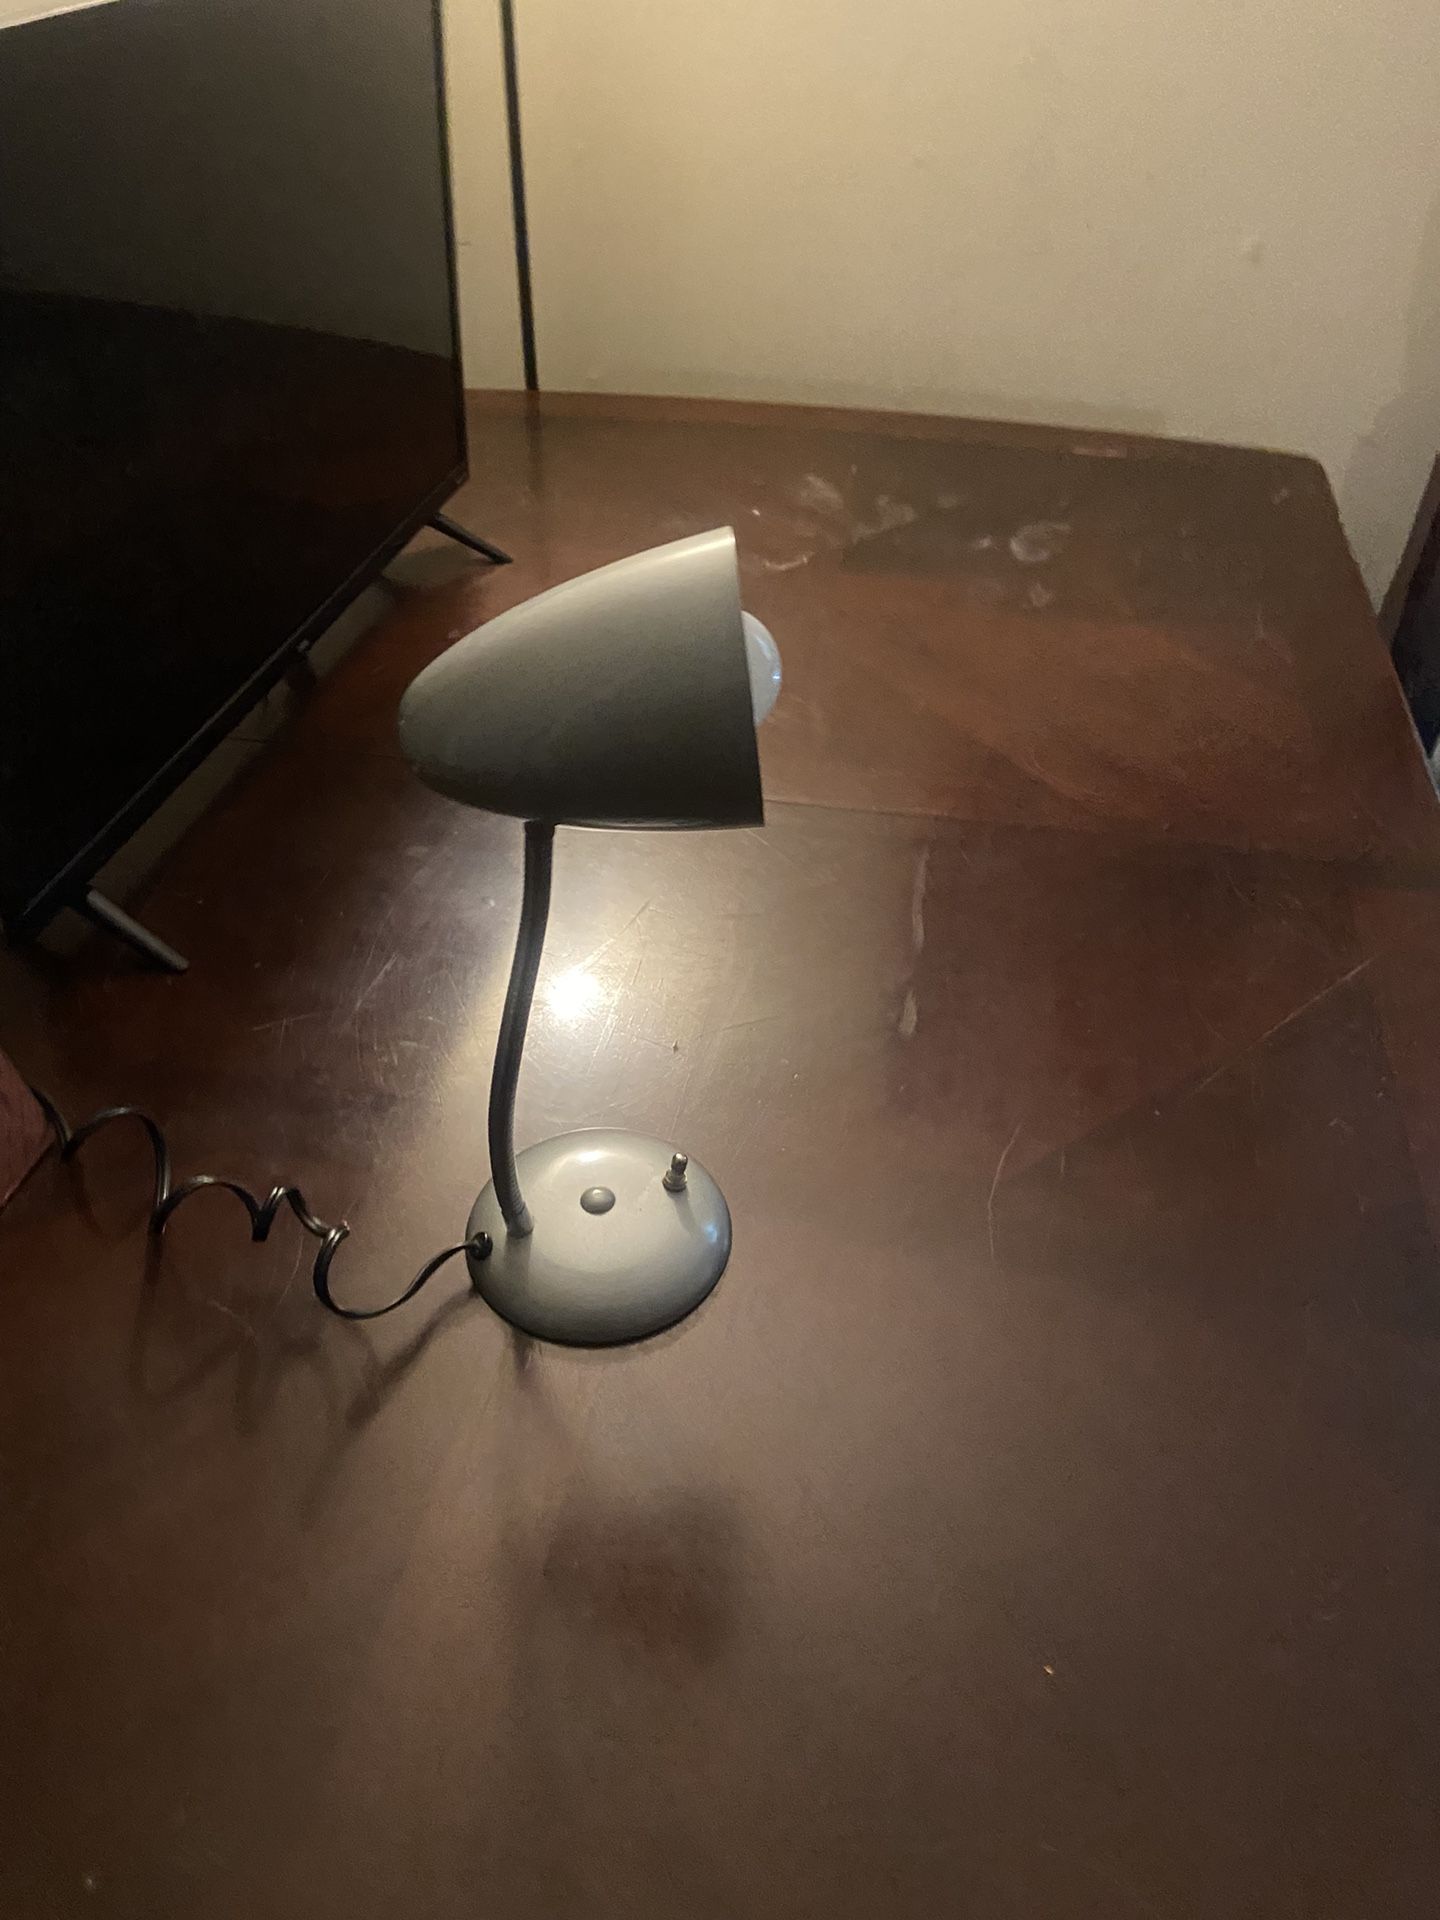 Desk Top Lamp